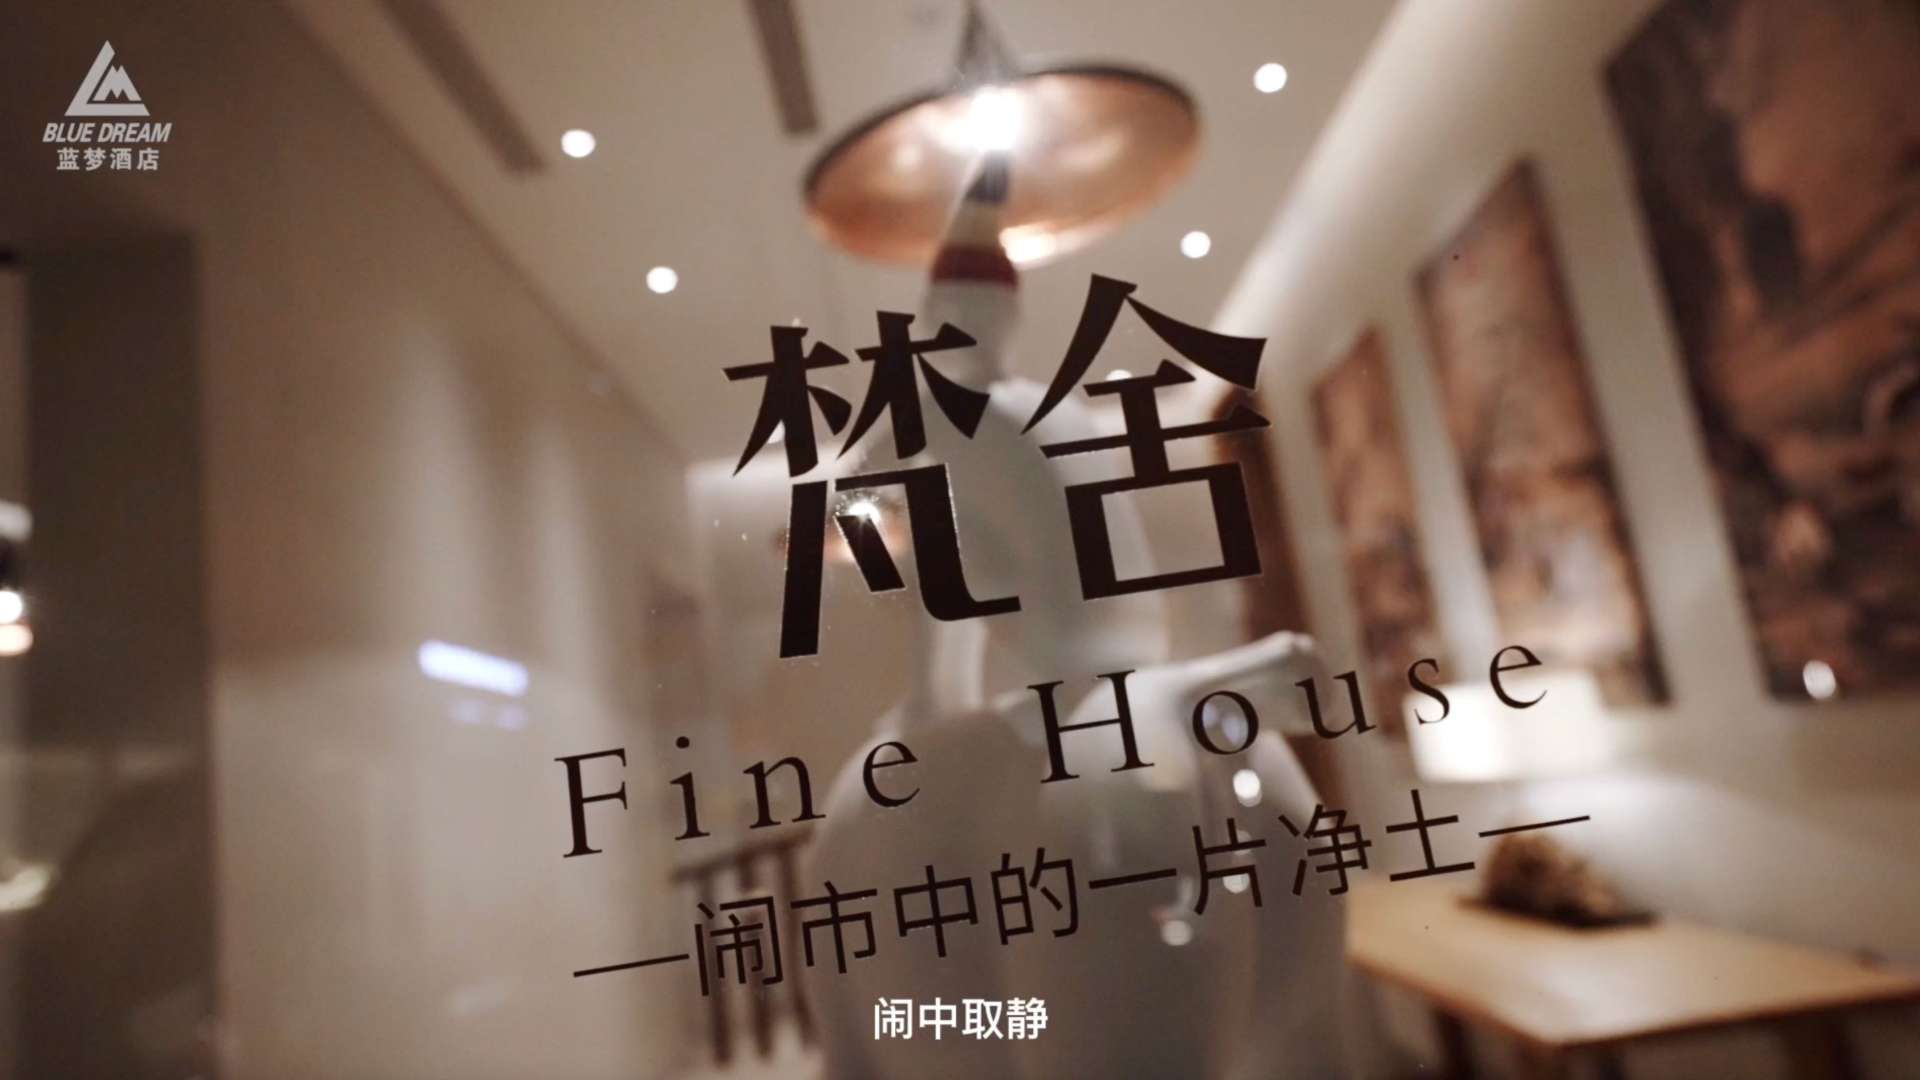 内蒙古·乌海蓝梦国际智能酒店宣传片·欢快版